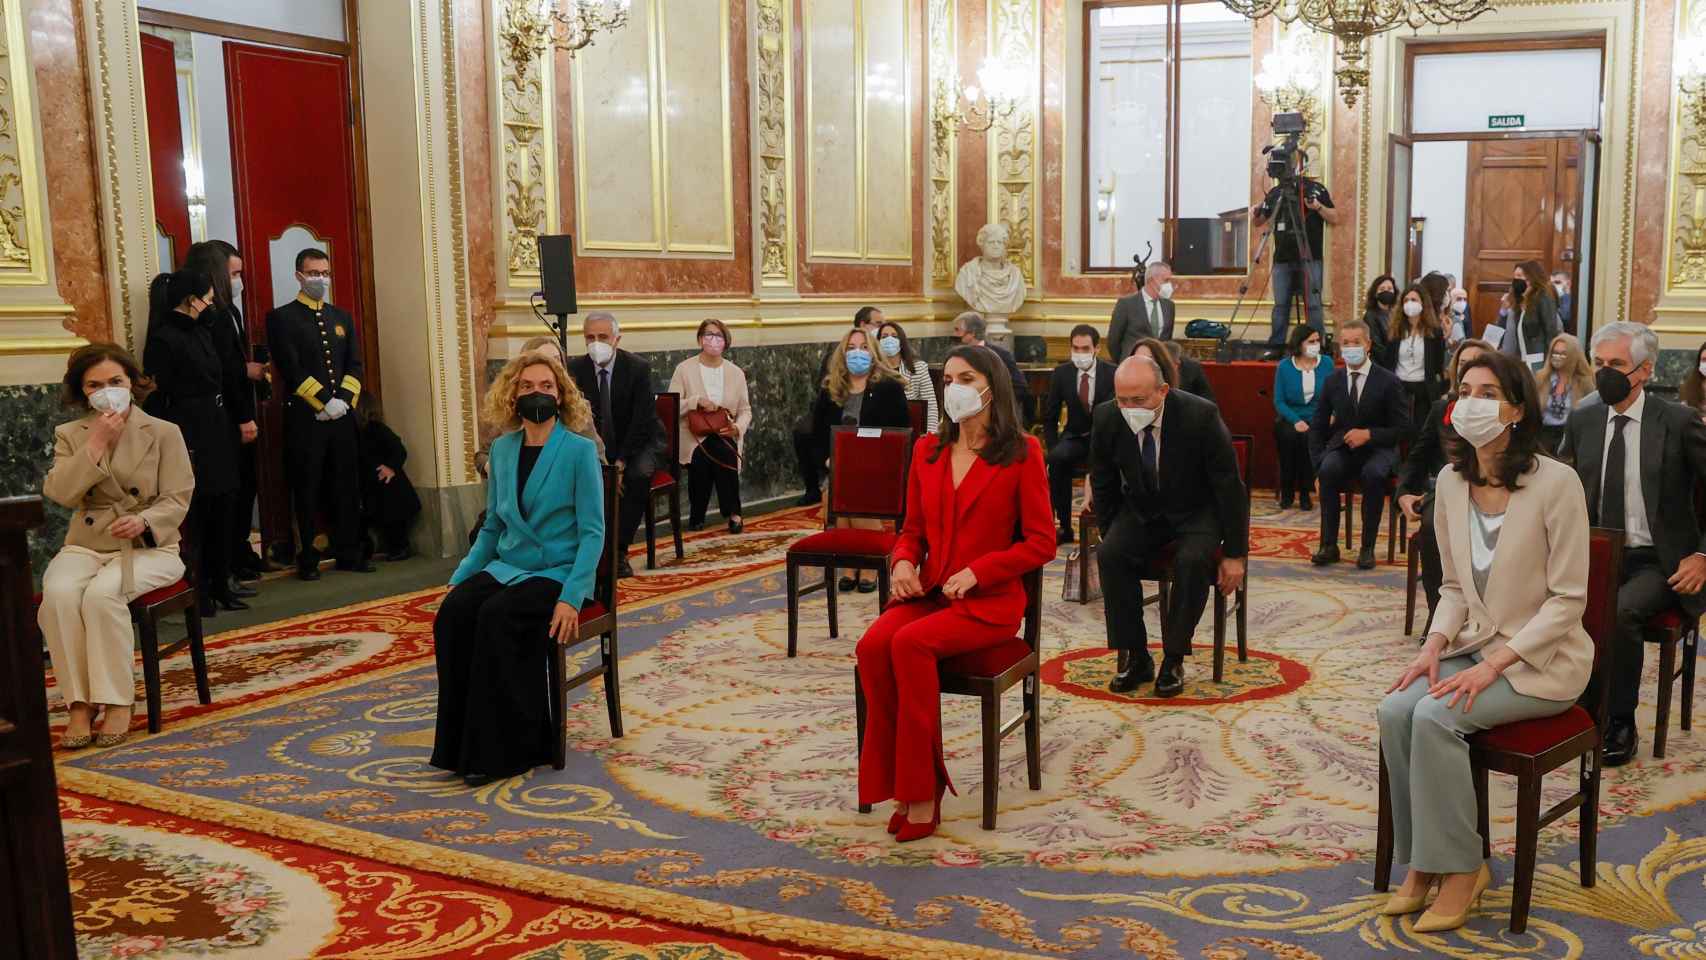 Por orden: la vicepresidenta primera Carmen Calvo, la presidenta del Congreso Meritxell Batet, la Reina Letizia y la presidenta del Senado Pilar Llop en el acto de homenaje a Clara Campoamor.